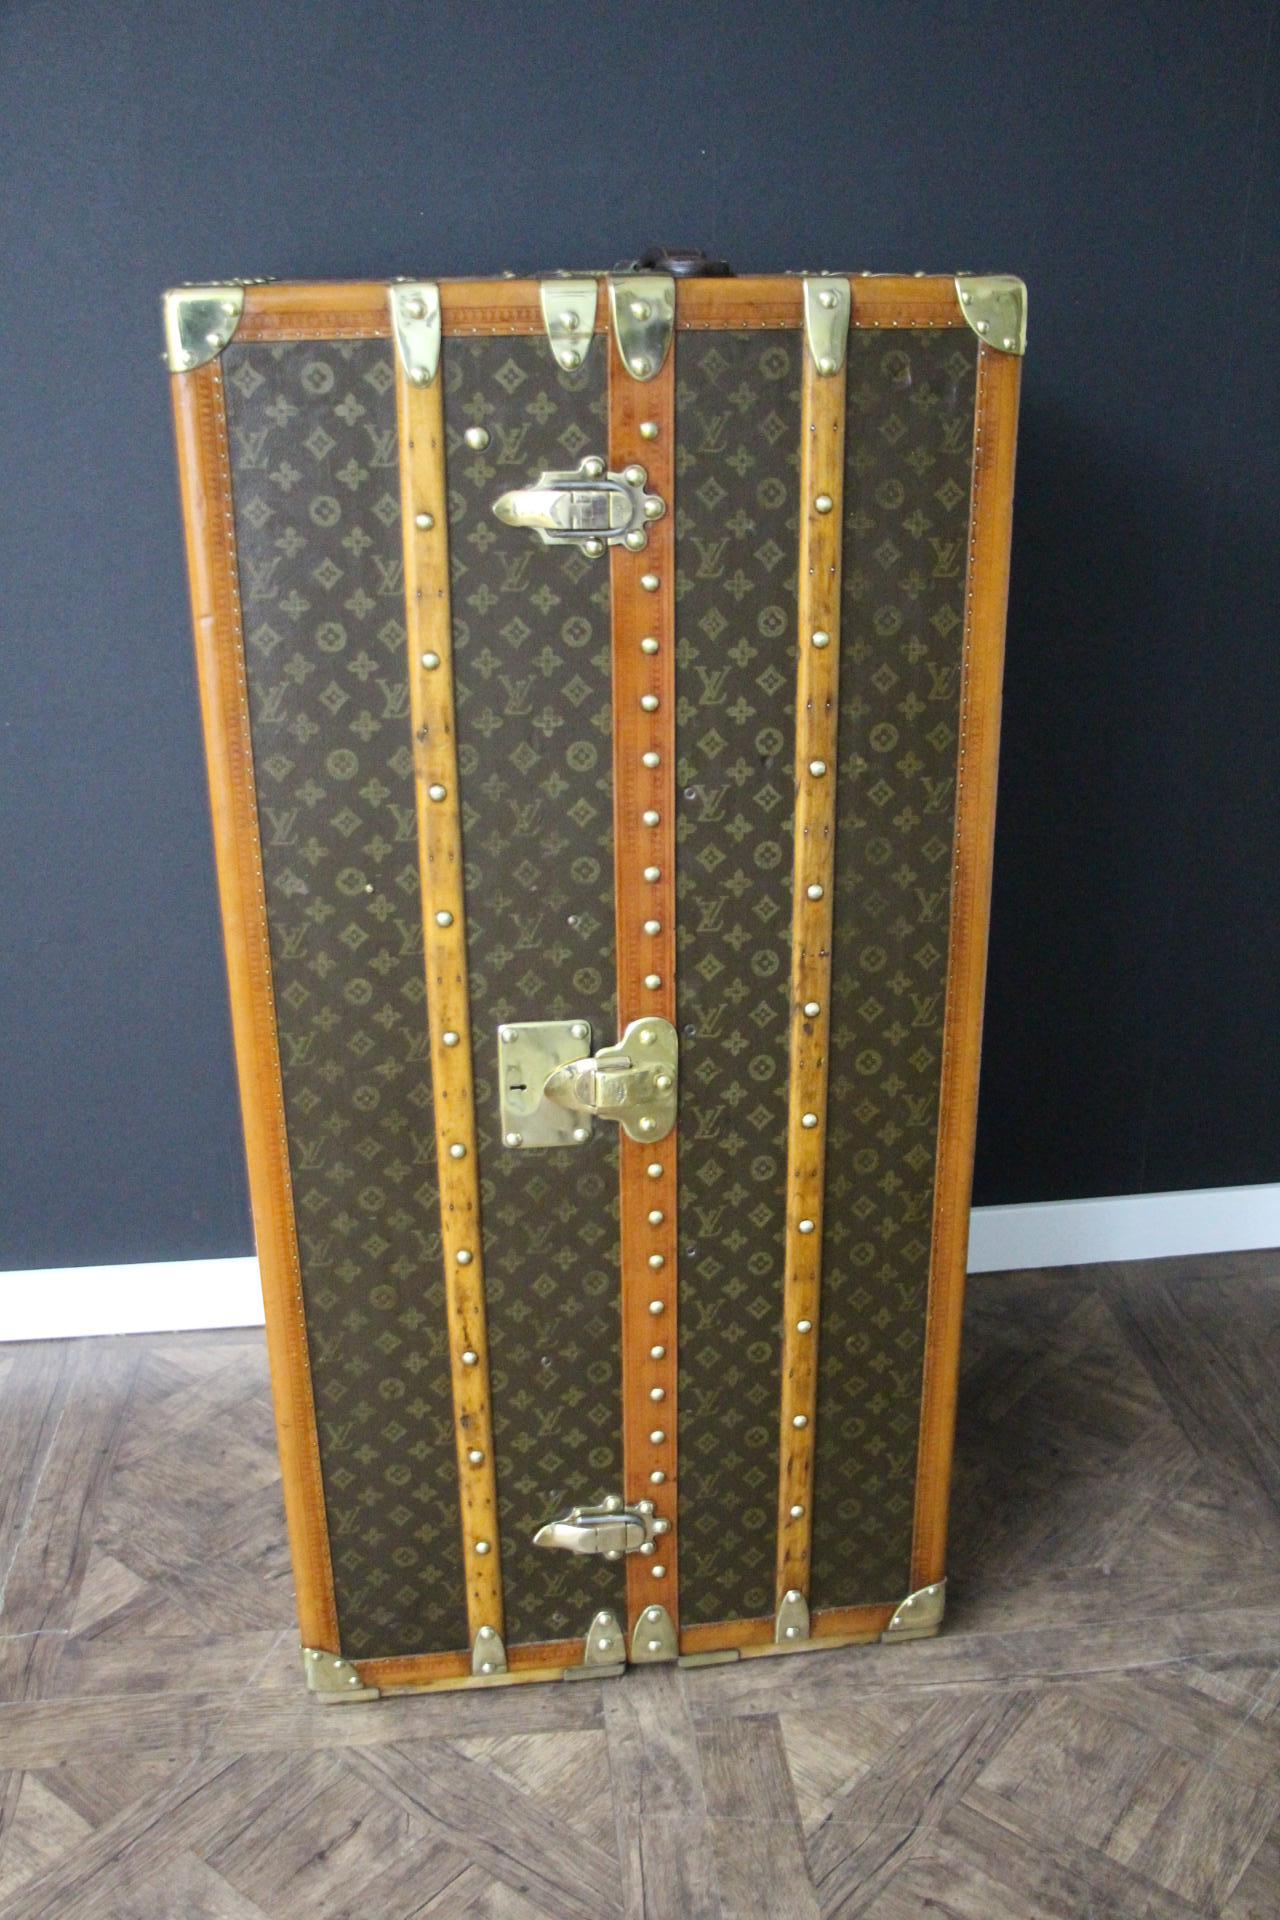 Cette superbe armoire Louis Vuitton présente une toile monogrammée au pochoir, des garnitures en lozine couleur miel et une serrure, des fermoirs et des clous en laiton massif.
La serrure, les fermoirs et les clous sont tous marqués Louis Vuitton.